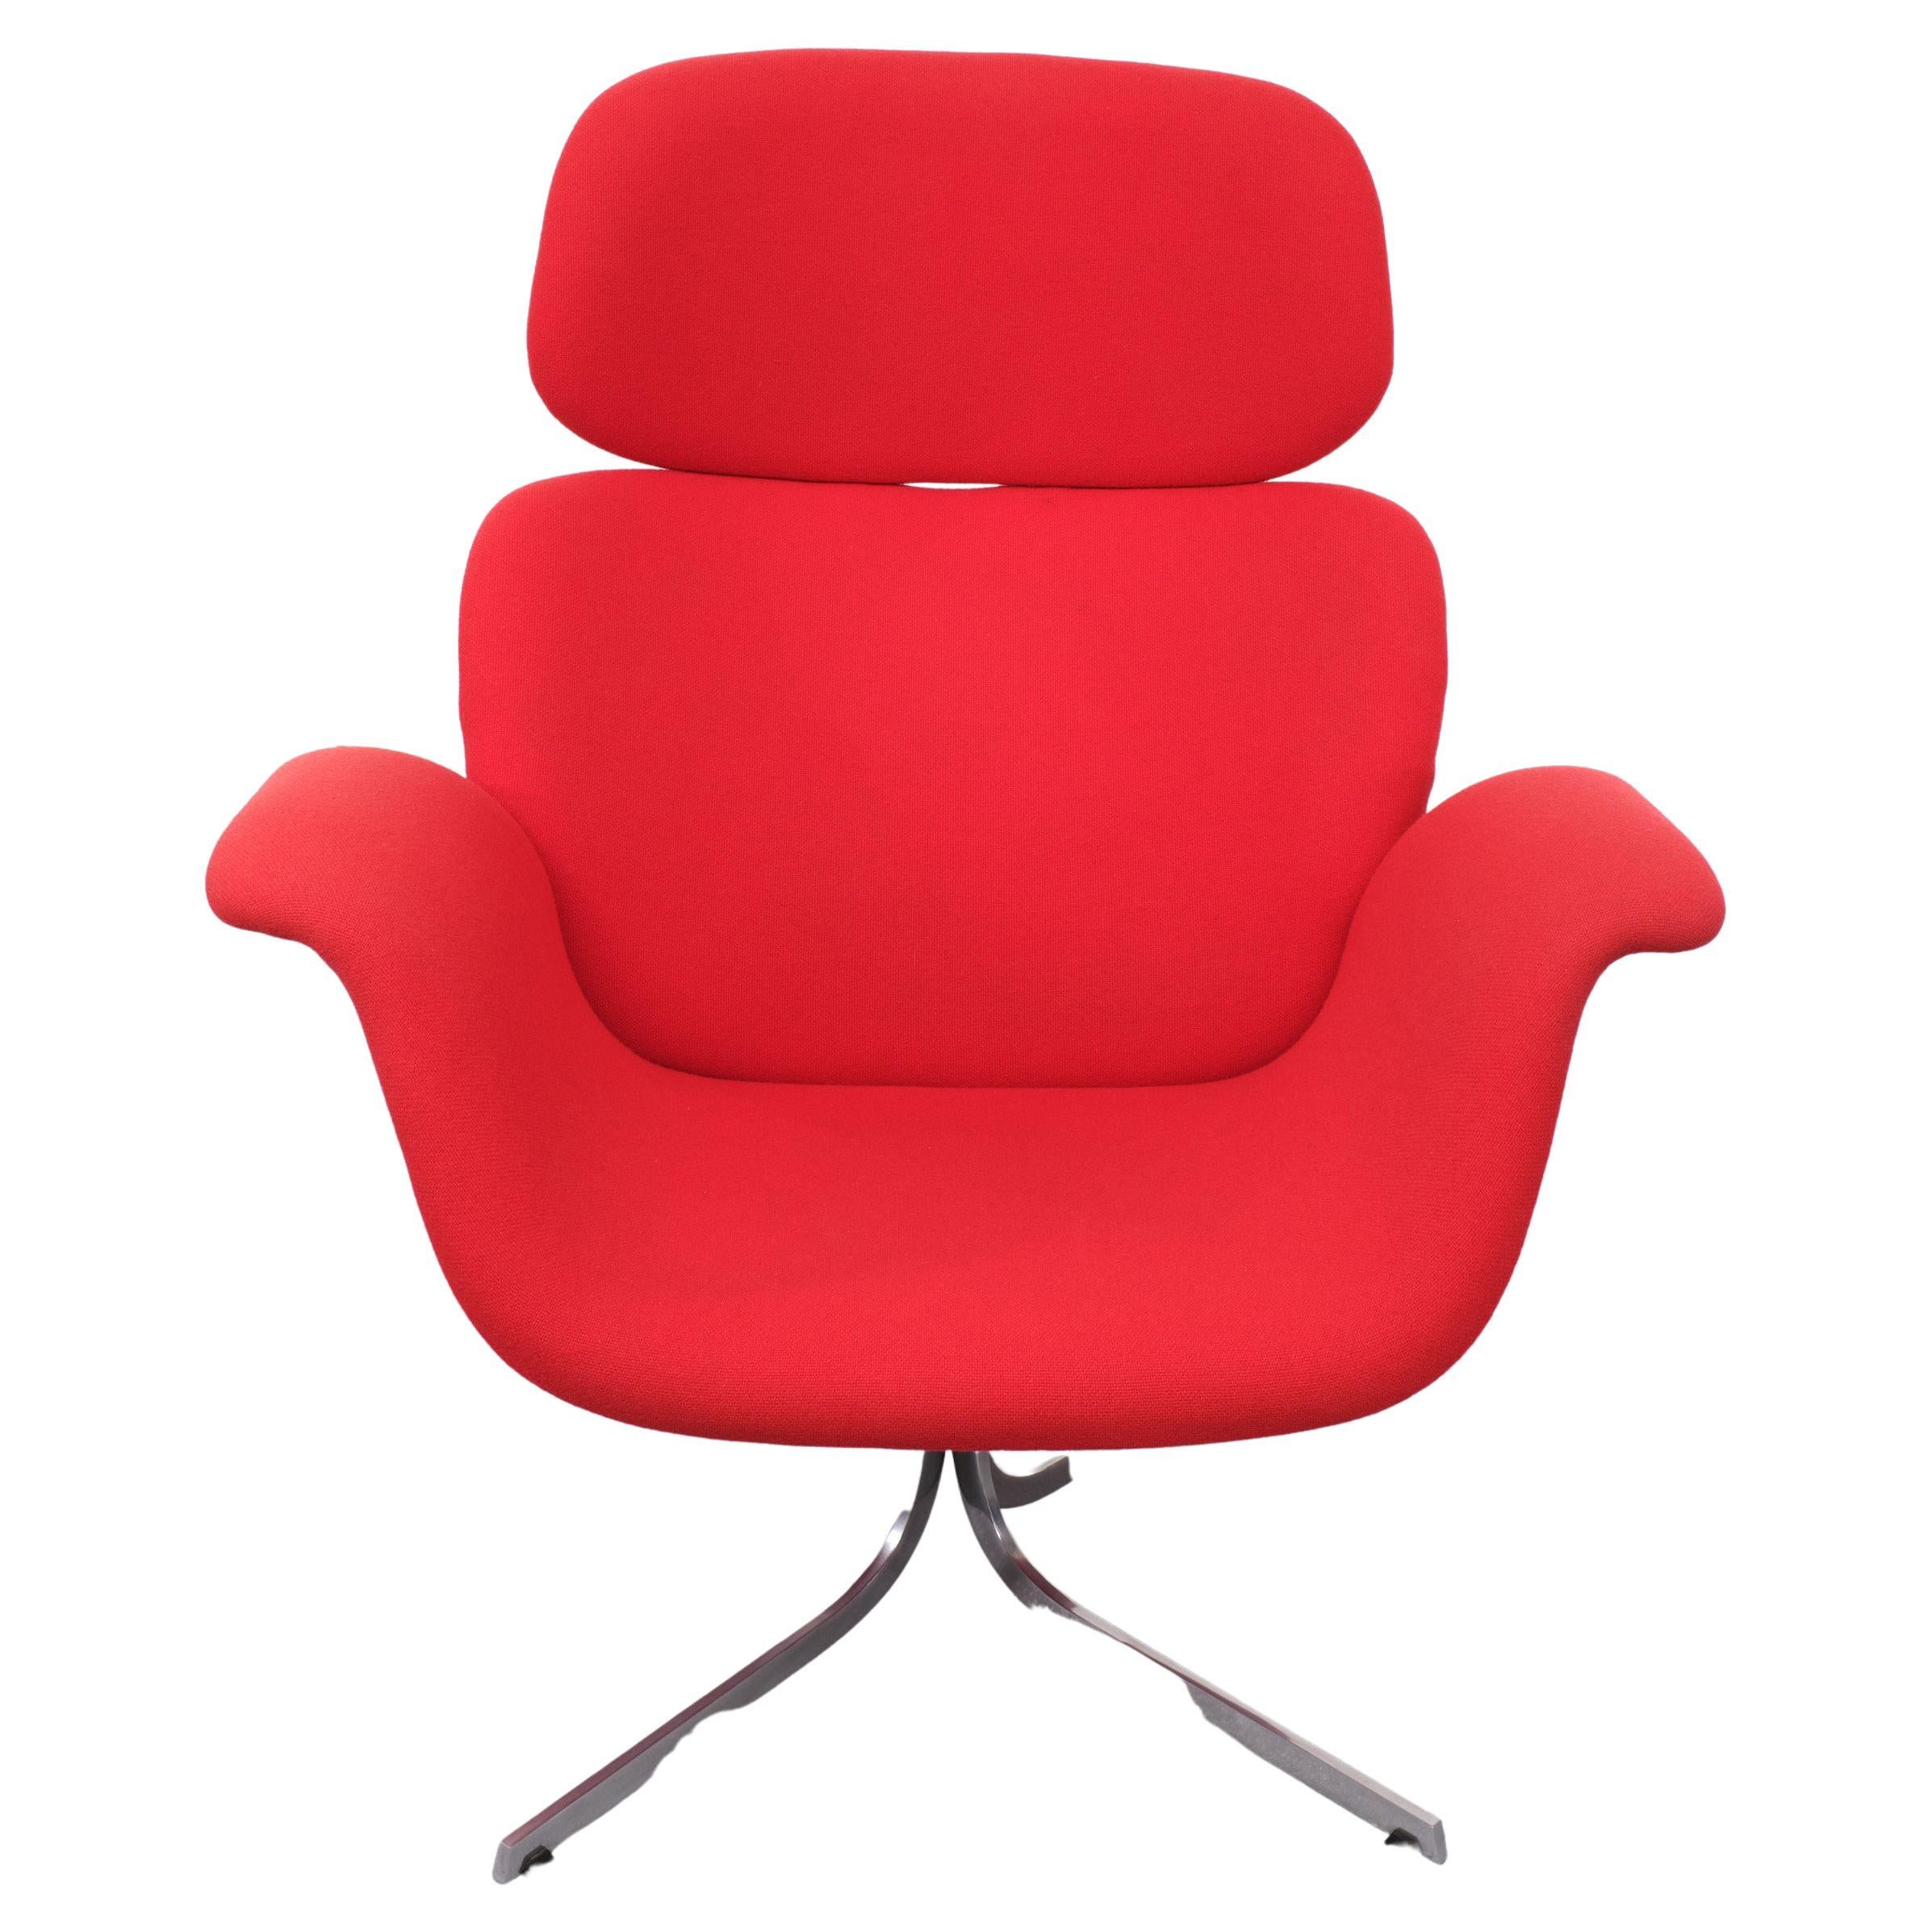 Schöner Big Tulip Lounge Stuhl. Pierre Paulin entwarf diesen kultigen Stuhl 1965.
für Artifort . Kommt in einem  Polsterung aus roter Wolle . Sternfüße . nicht drehbar .
Sehr guter Sitzkomfort. Guter Zustand. 

Bitte zögern Sie nicht, sich für ein